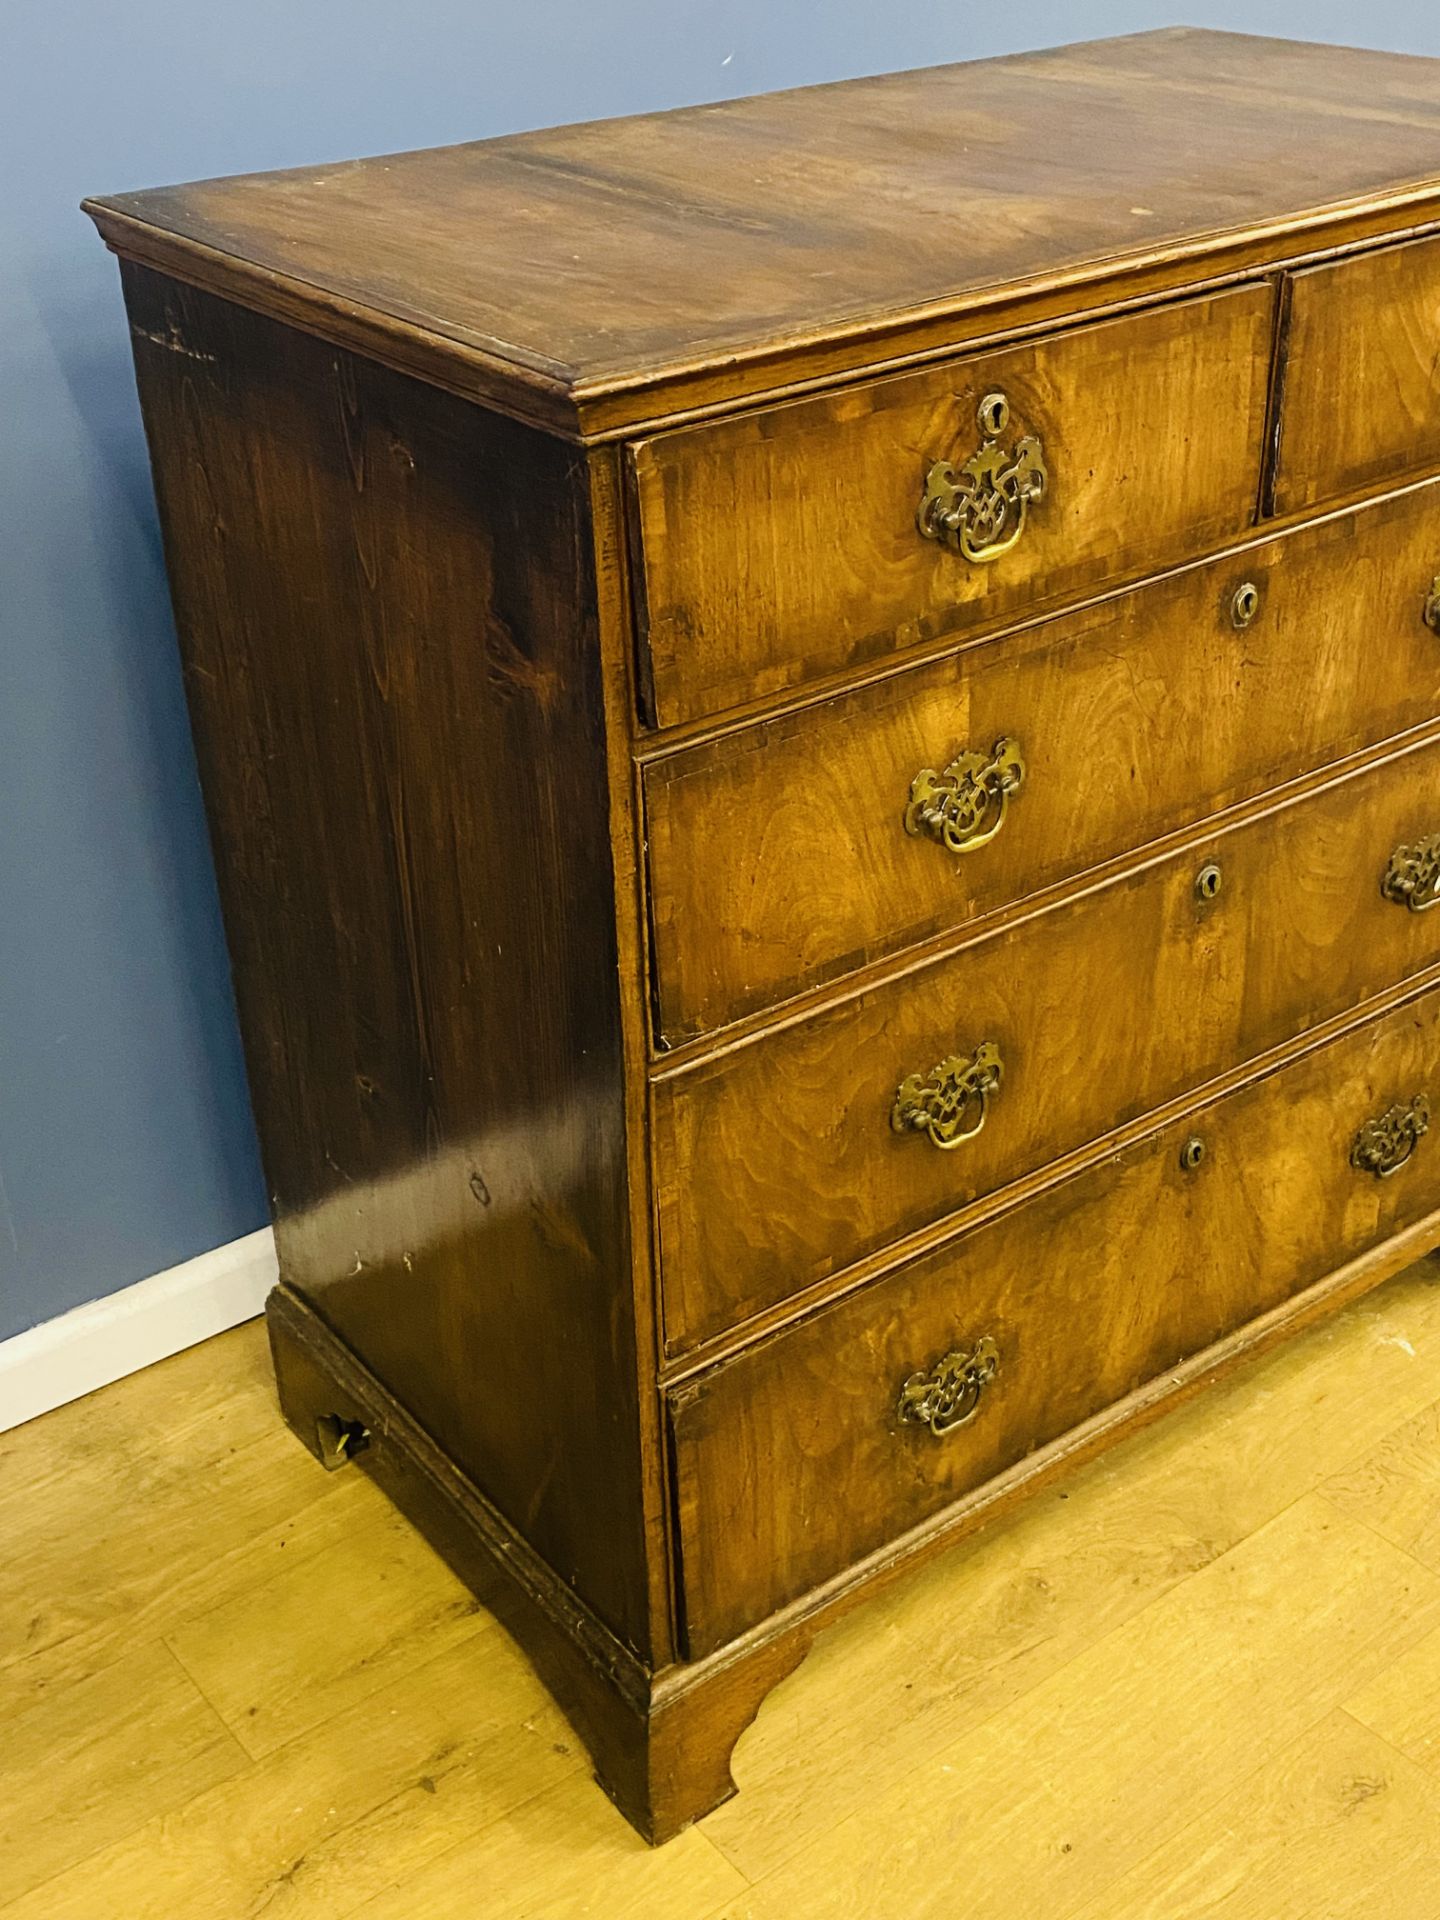 19th century mahogany veneer chest of drawers - Image 4 of 5